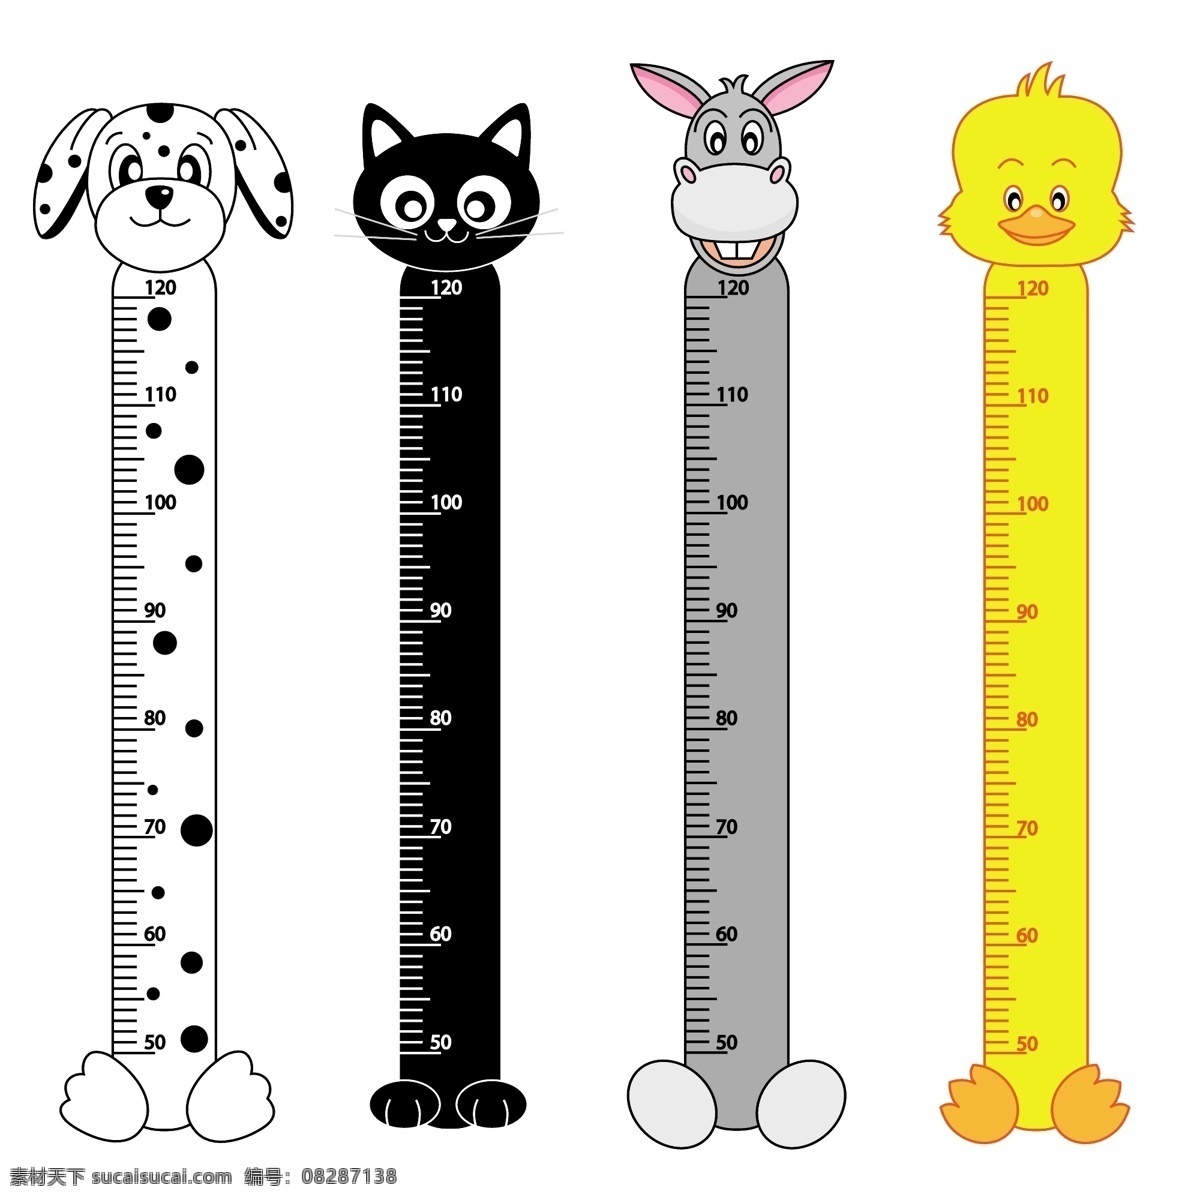 猫 狗 幼儿园 卡通 小 尺子 工具 矢量 设计素材 小尺子